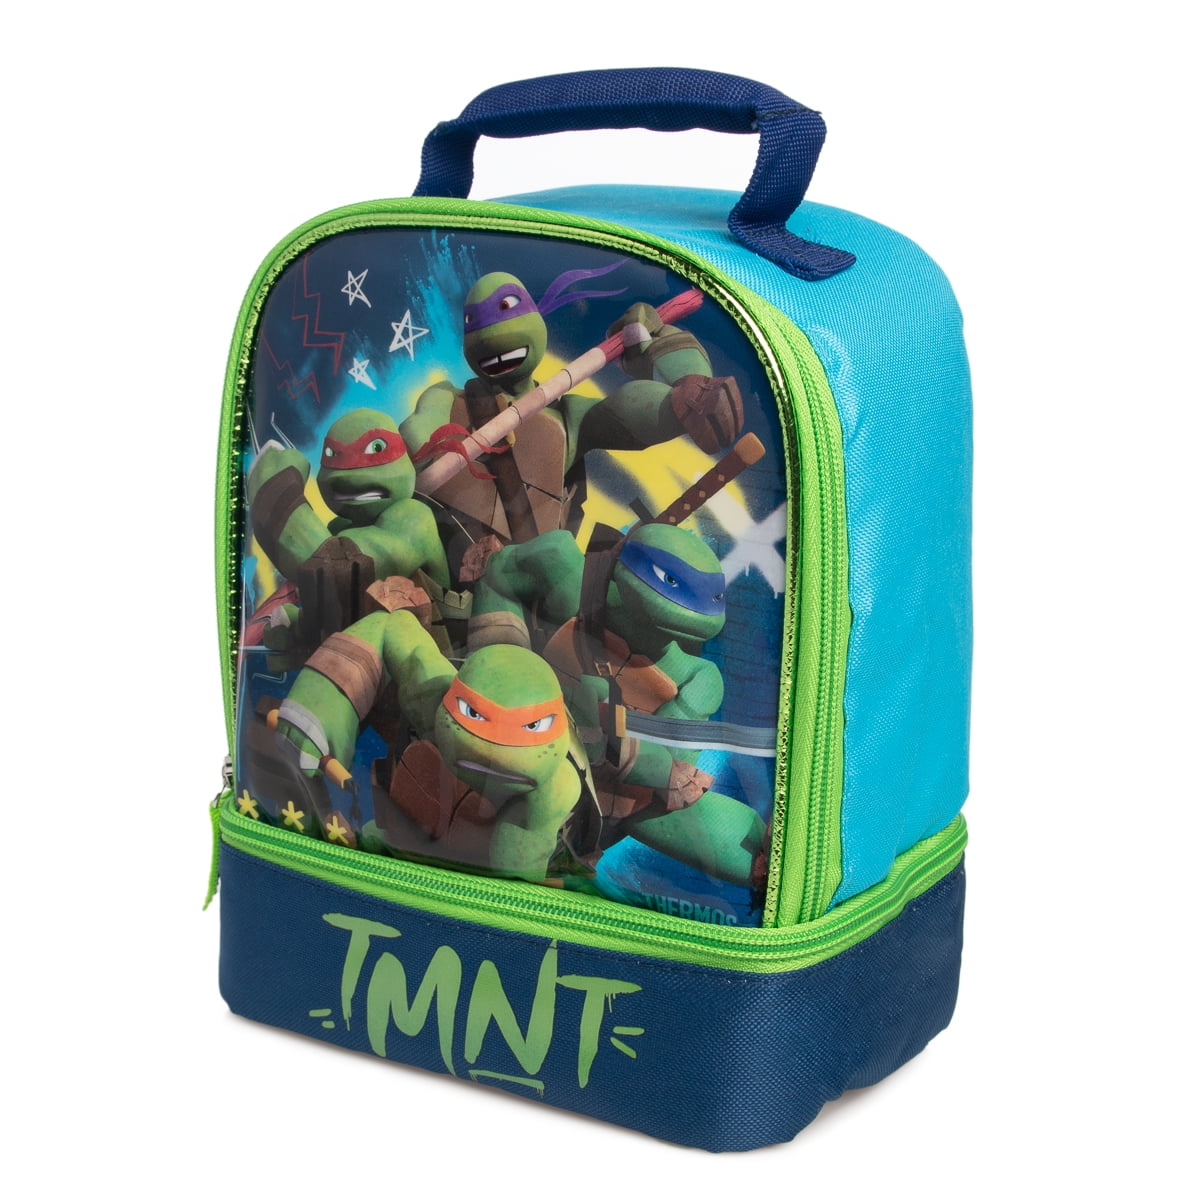 Nickelodeon Kids Teenage Mutant Ninja Turtles Sleeping Bag & Storage Bag,Black 